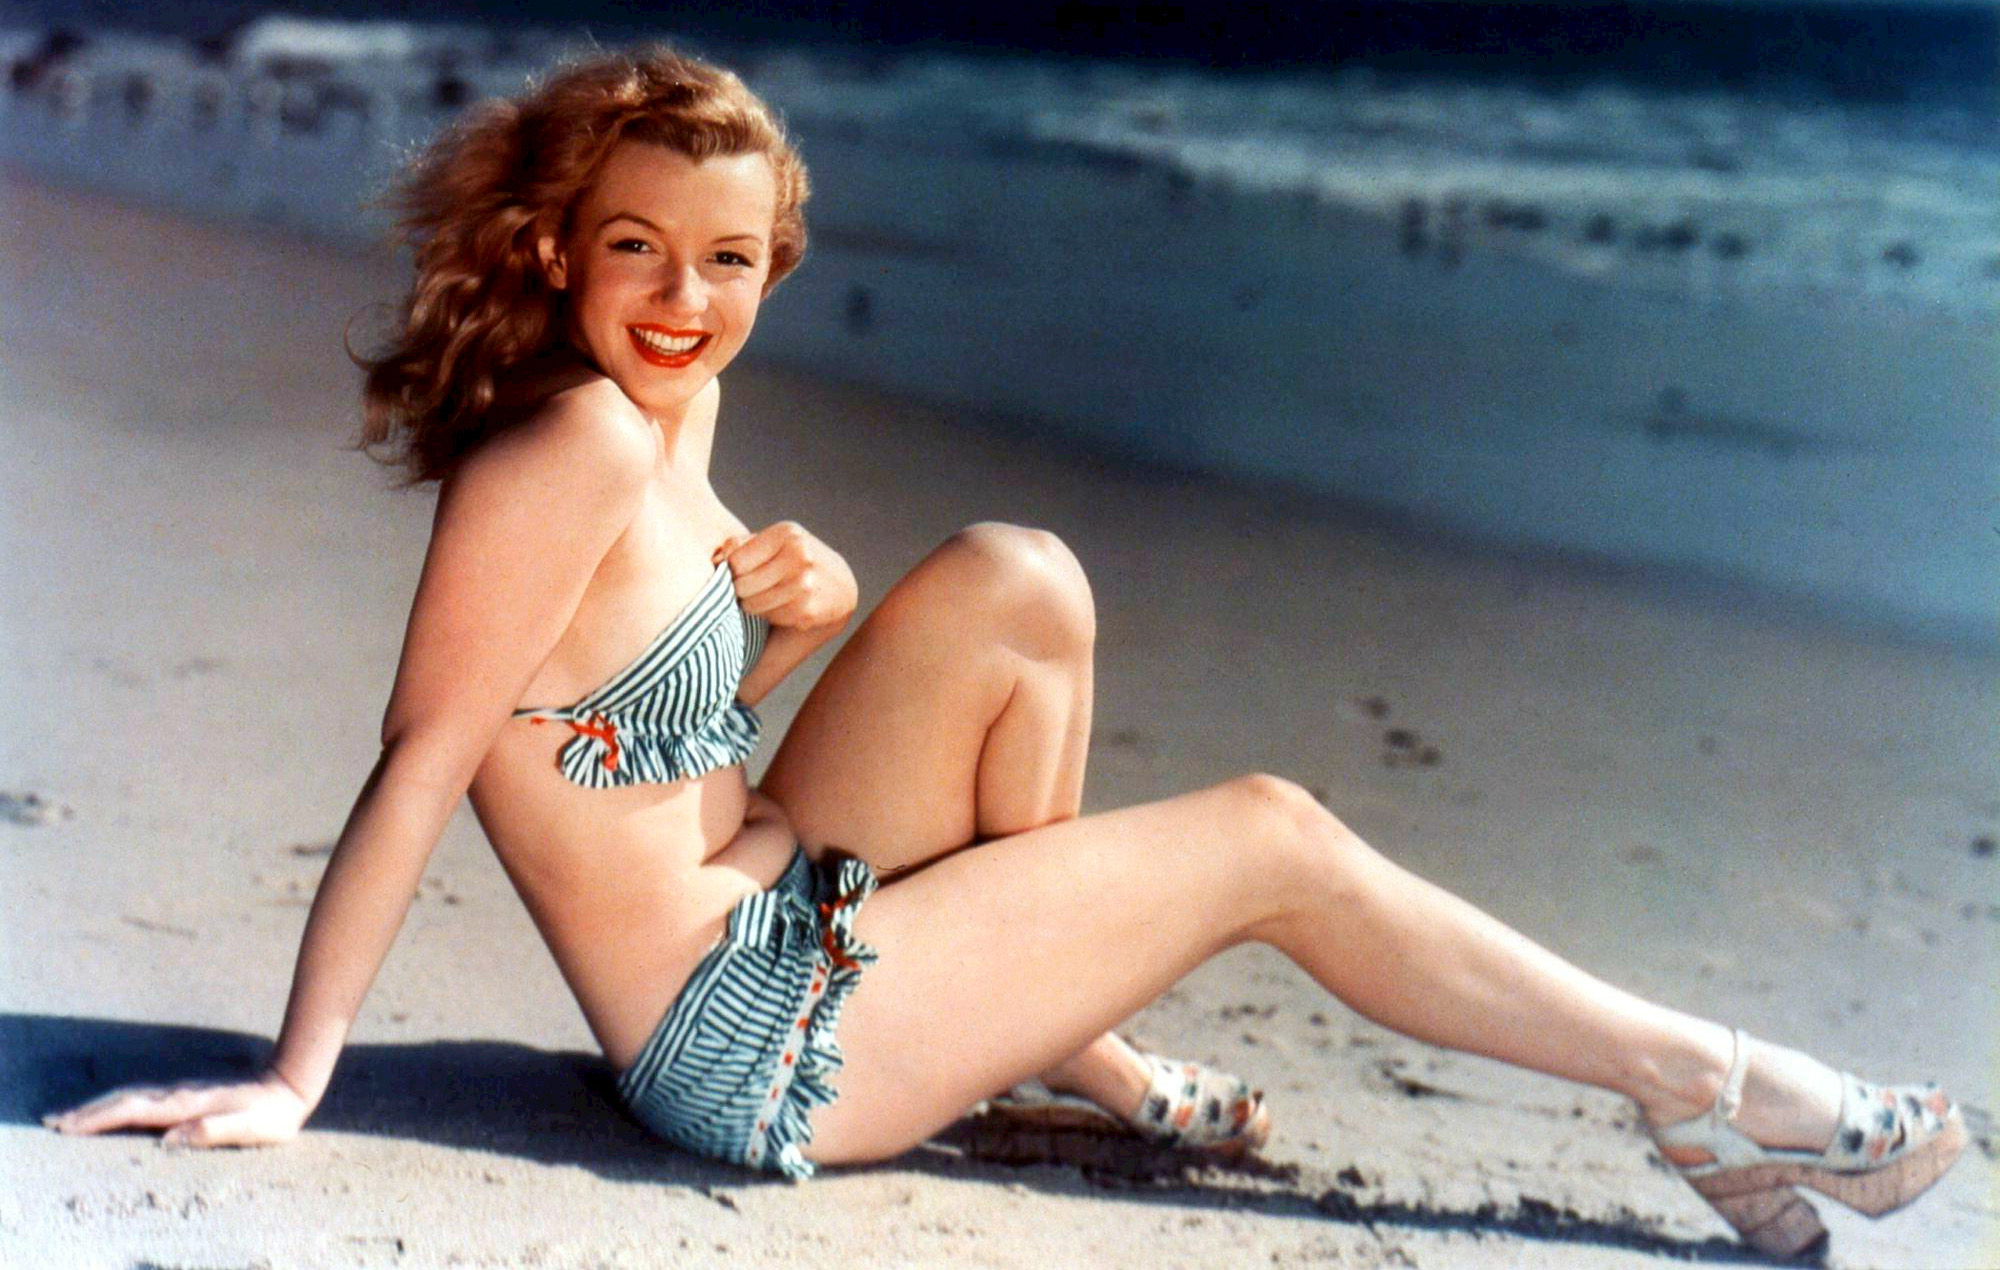 Monroe posando como modelo pin-up para una fotografía de postal, c. 1940. De Teichnor Bros., Boston - eBayfrontback, Dominio público.